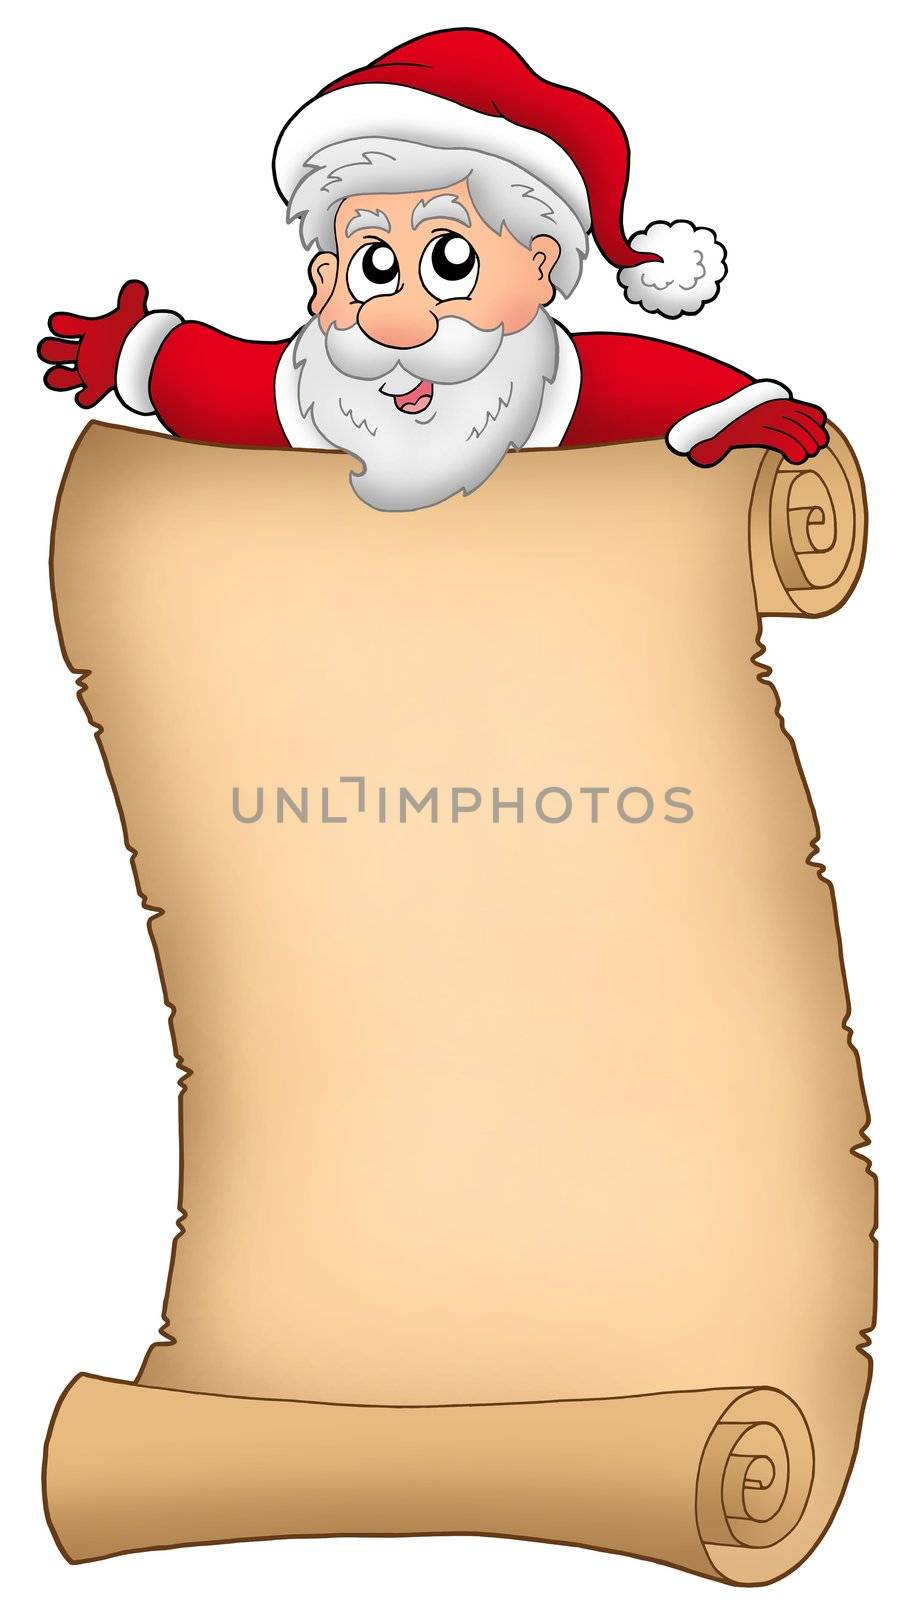 Parchment with happy Santa Claus - color illustration.